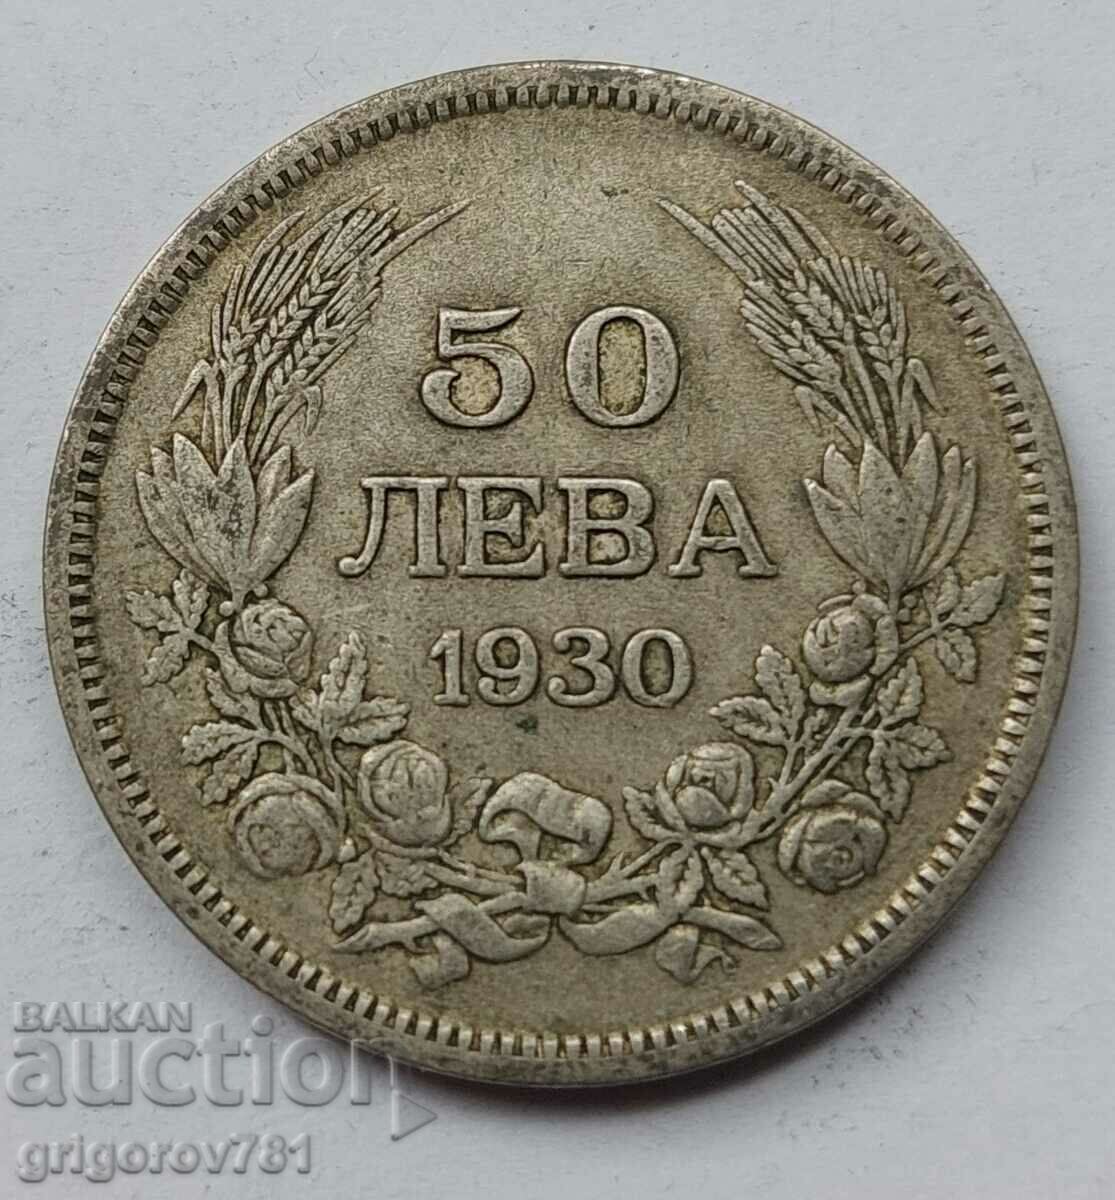 50 leva silver Bulgaria 1930 - silver coin #76